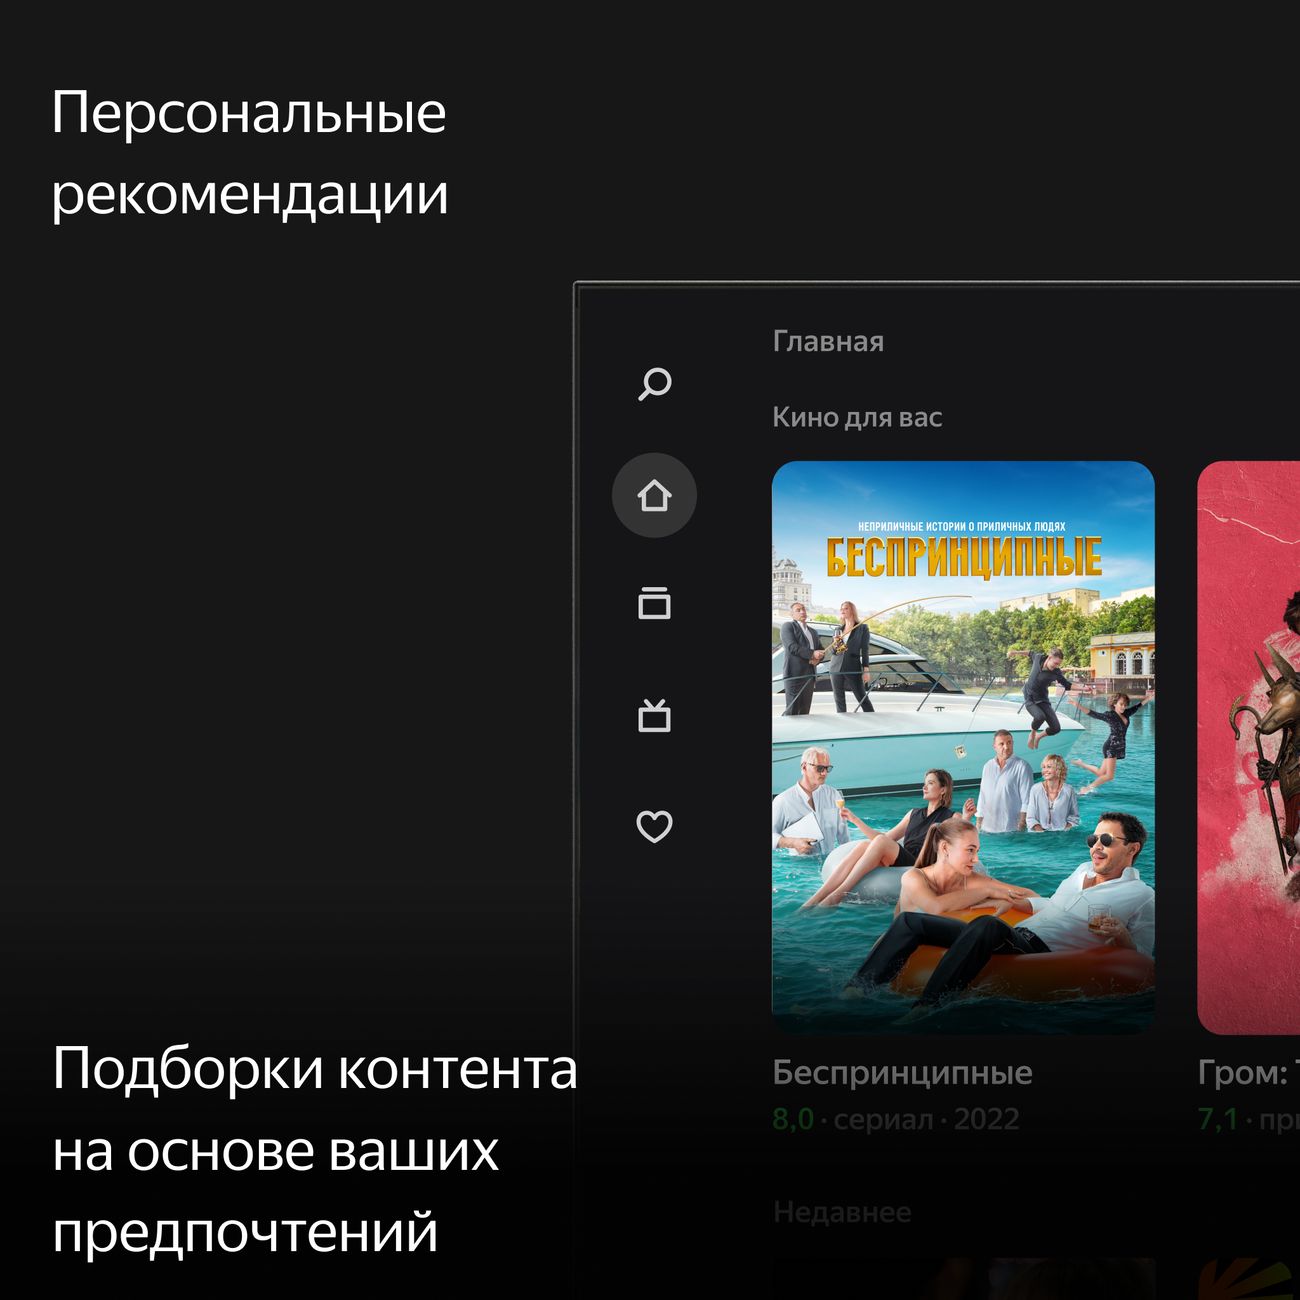 Телевизор Yandex 43 YNDX-00071 с "Алисой"